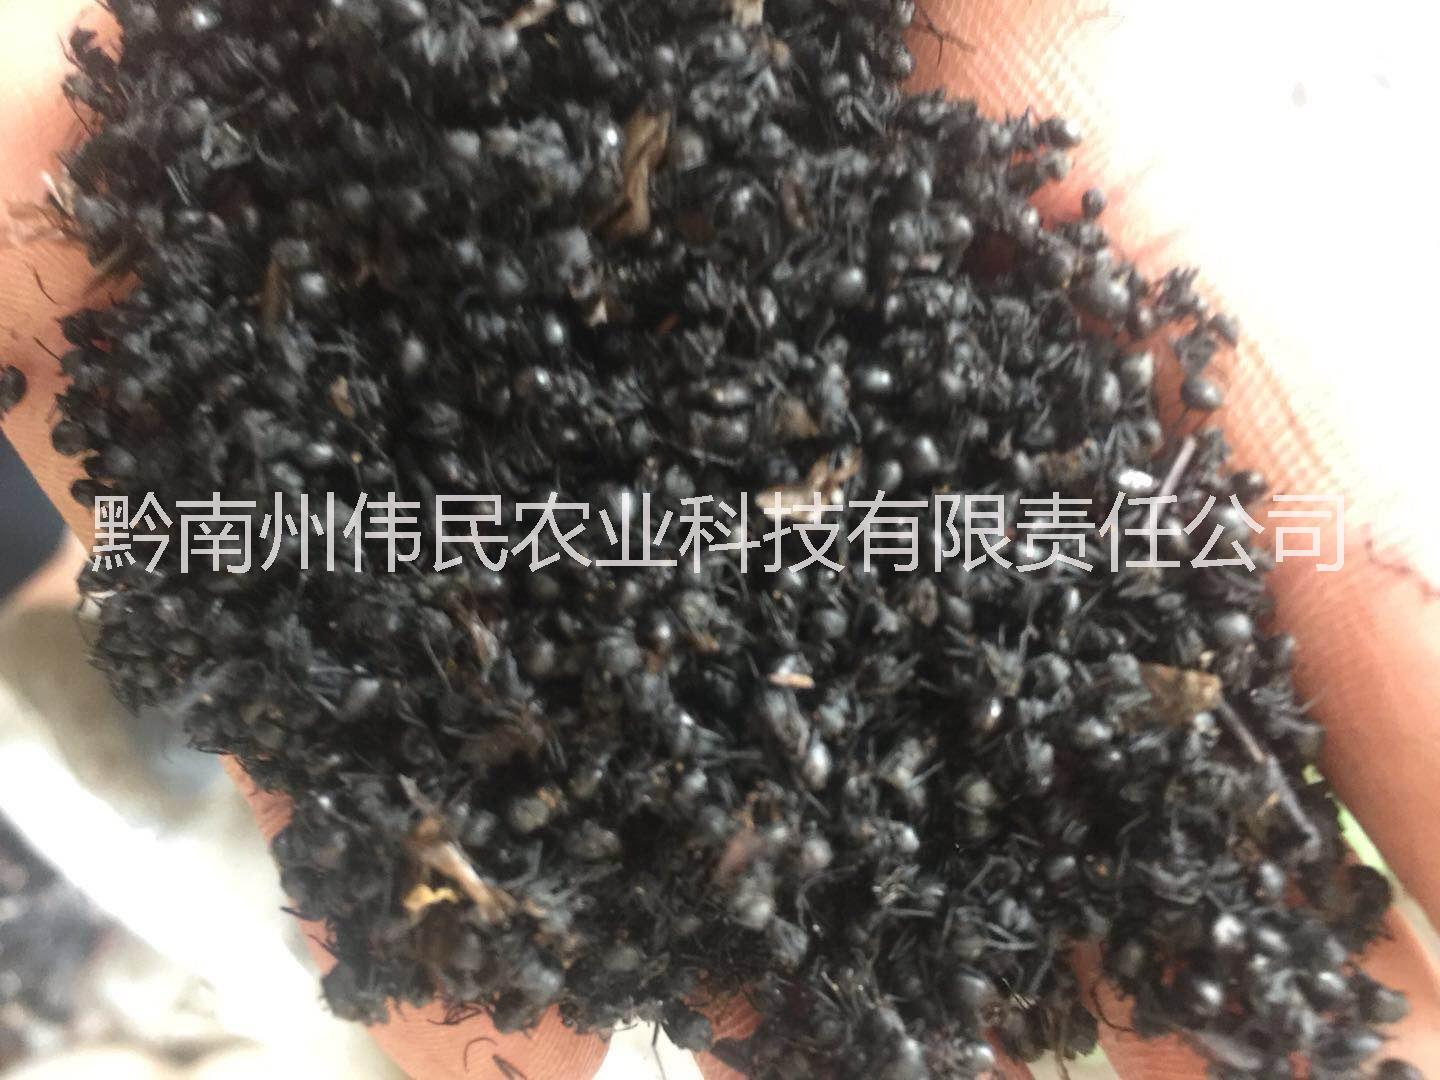 贵州黔南黑蚂蚁 13638546628 黑蚂蚁批发 贵州黑蚂蚁 黑蚂蚁供应商 黑蚂蚁